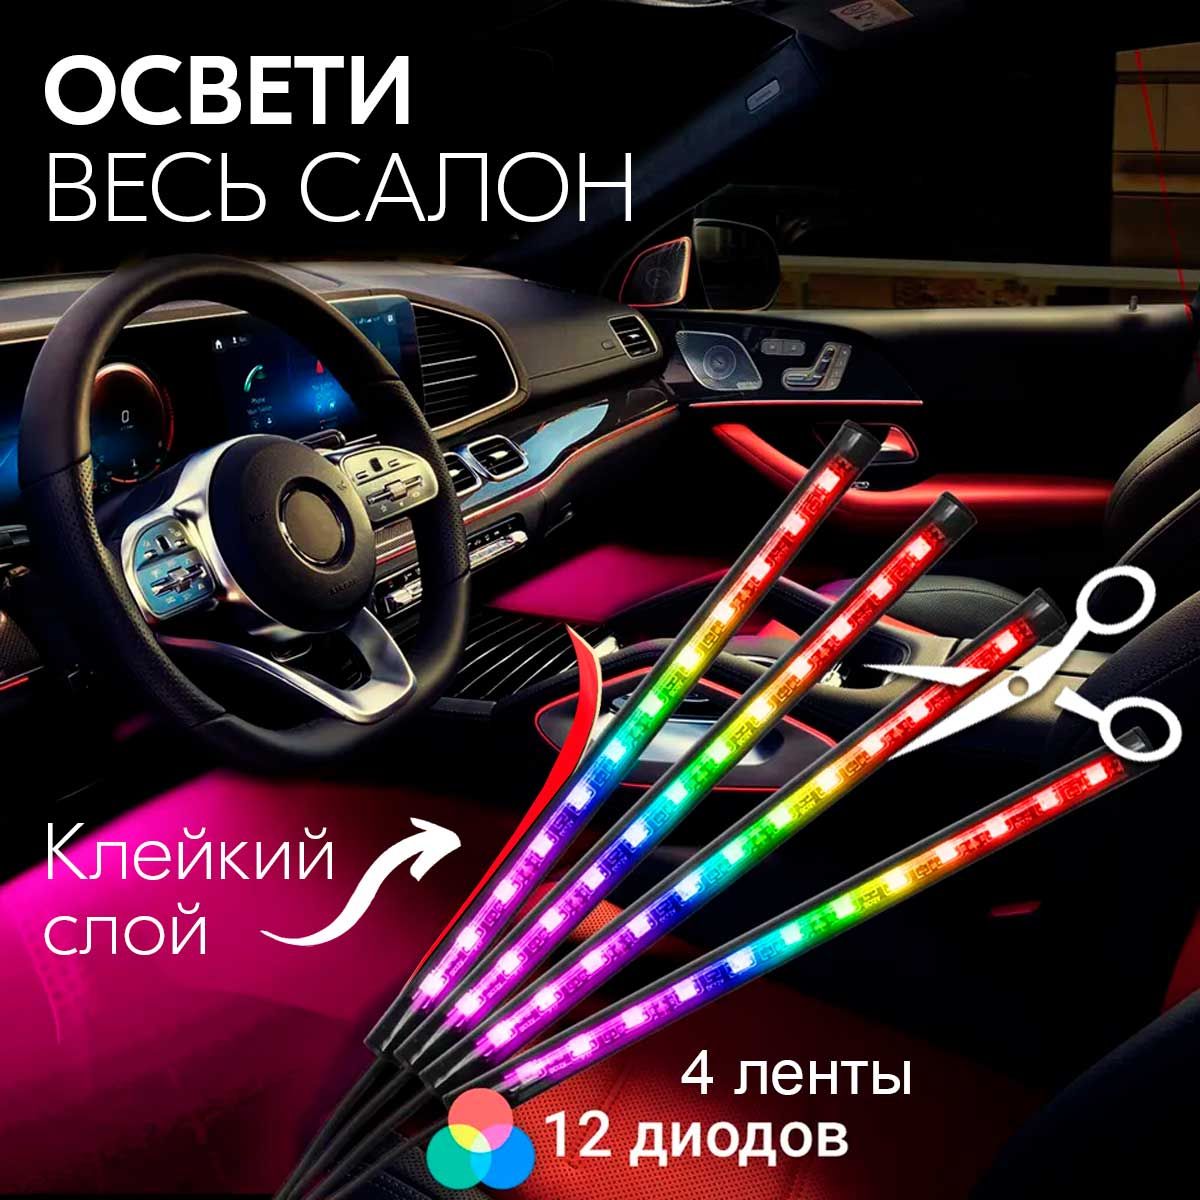 Шумоизоляция Chevrolet Cruze за 1 день в Москве